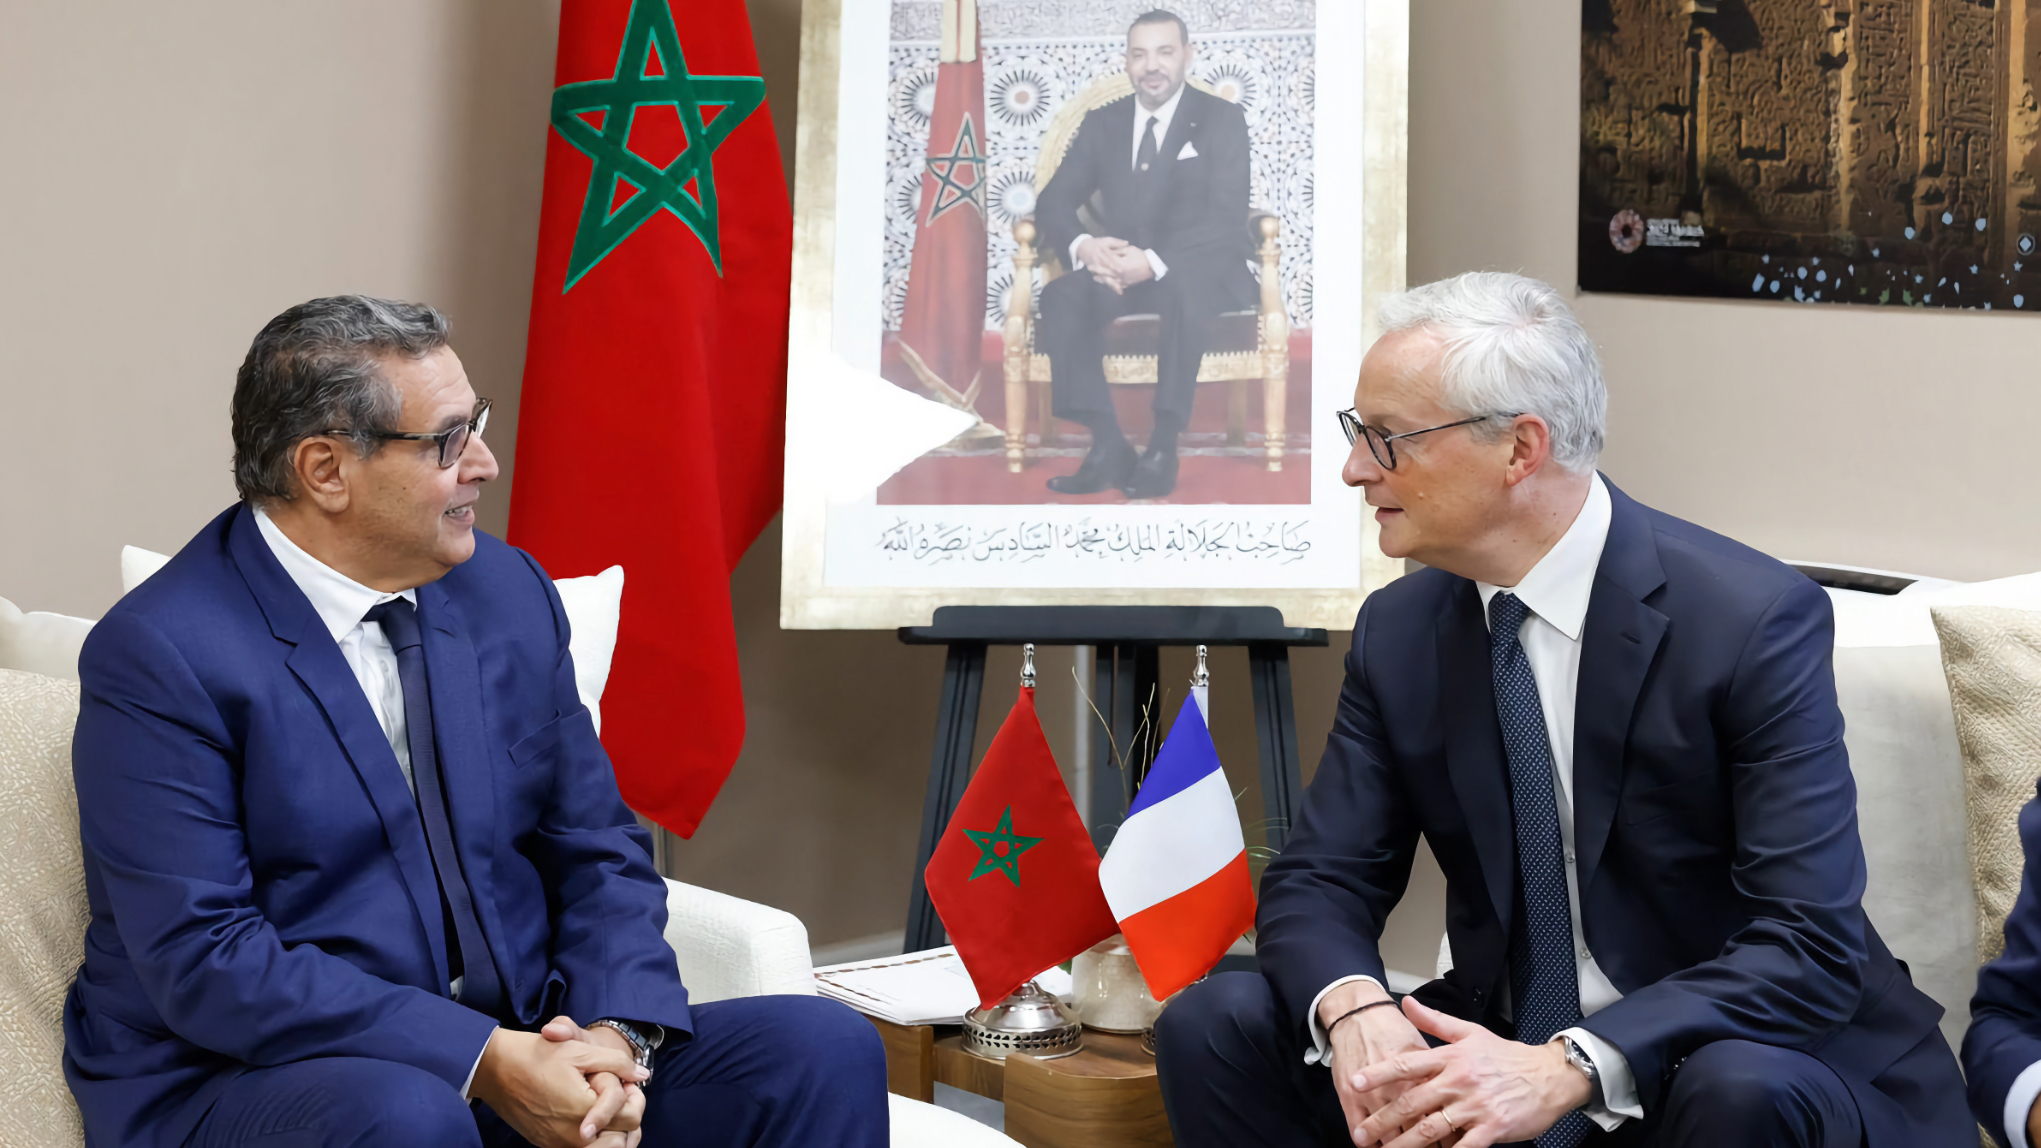 وزير الاقتصاد الفرنسي على رأس وفد كبير لتعزيز الشراكة بين باريس والرباط